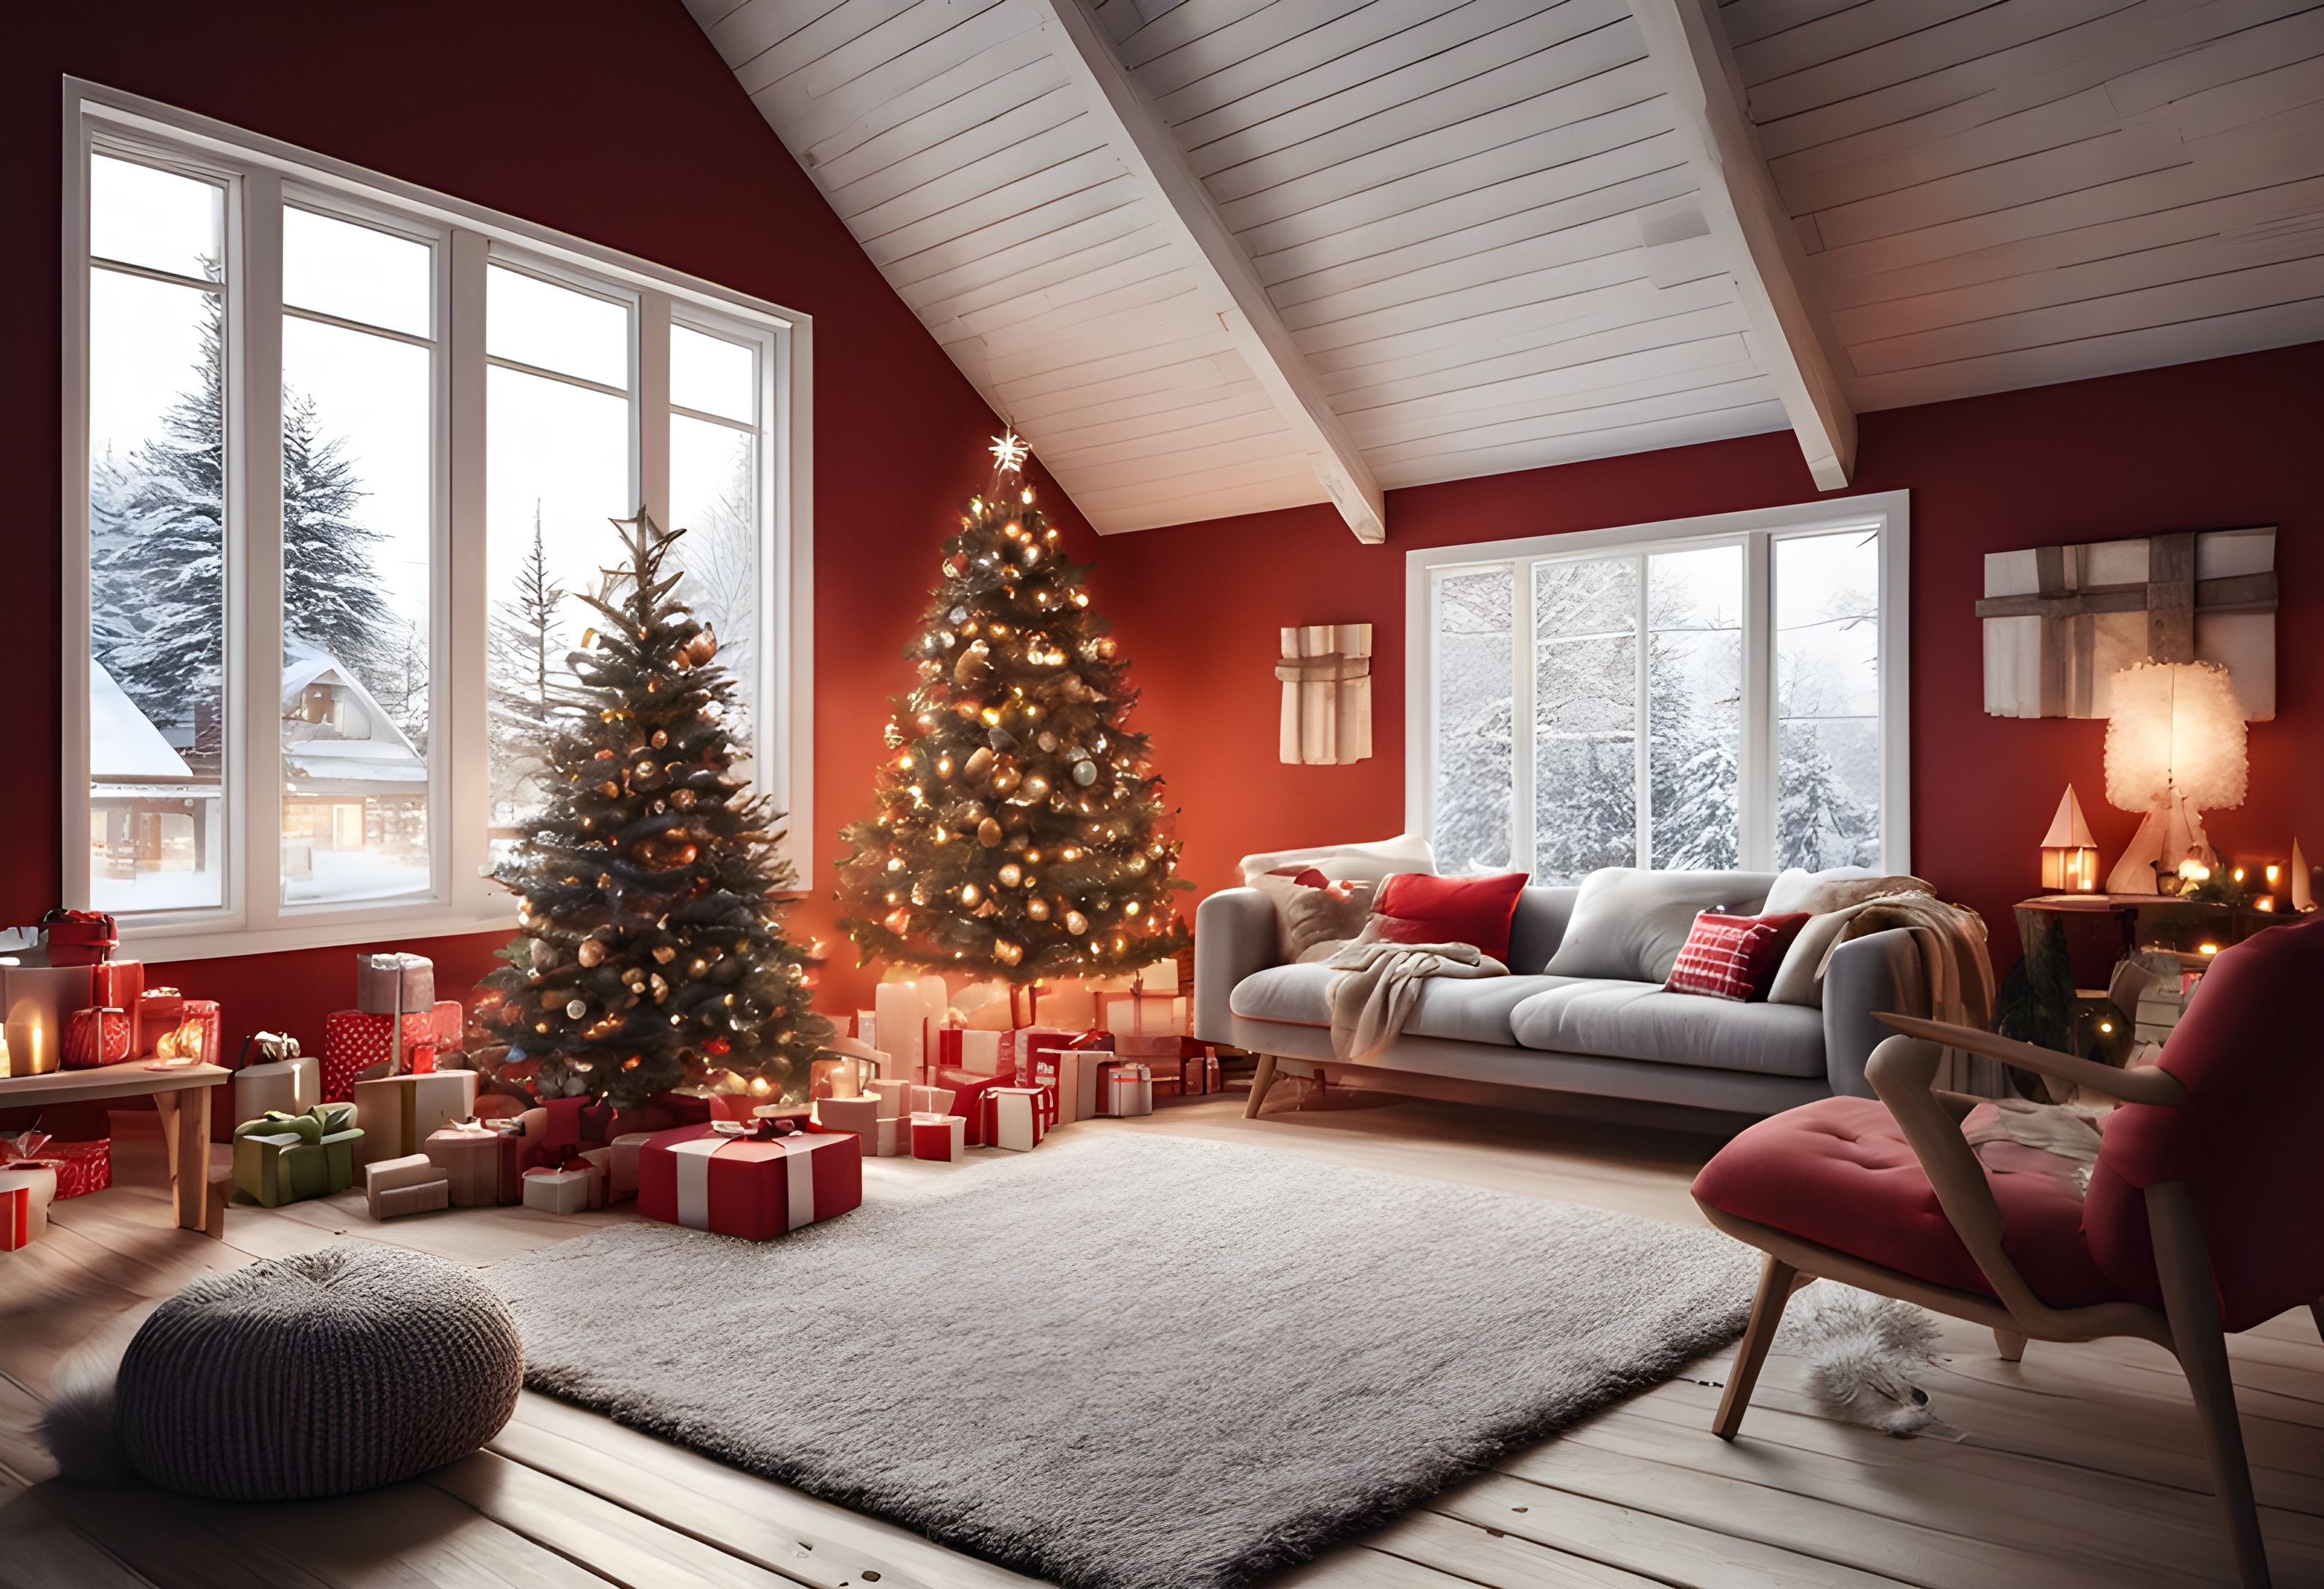 ภาพถ่ายภายในบ้านไม้สวีเดนสีแดง ฮุกกะ เวลาคริสต์มาส บรรยากาศสบาย ๆ แสงไฟประดับ การตกแต่งภายในที่ทันสมัย